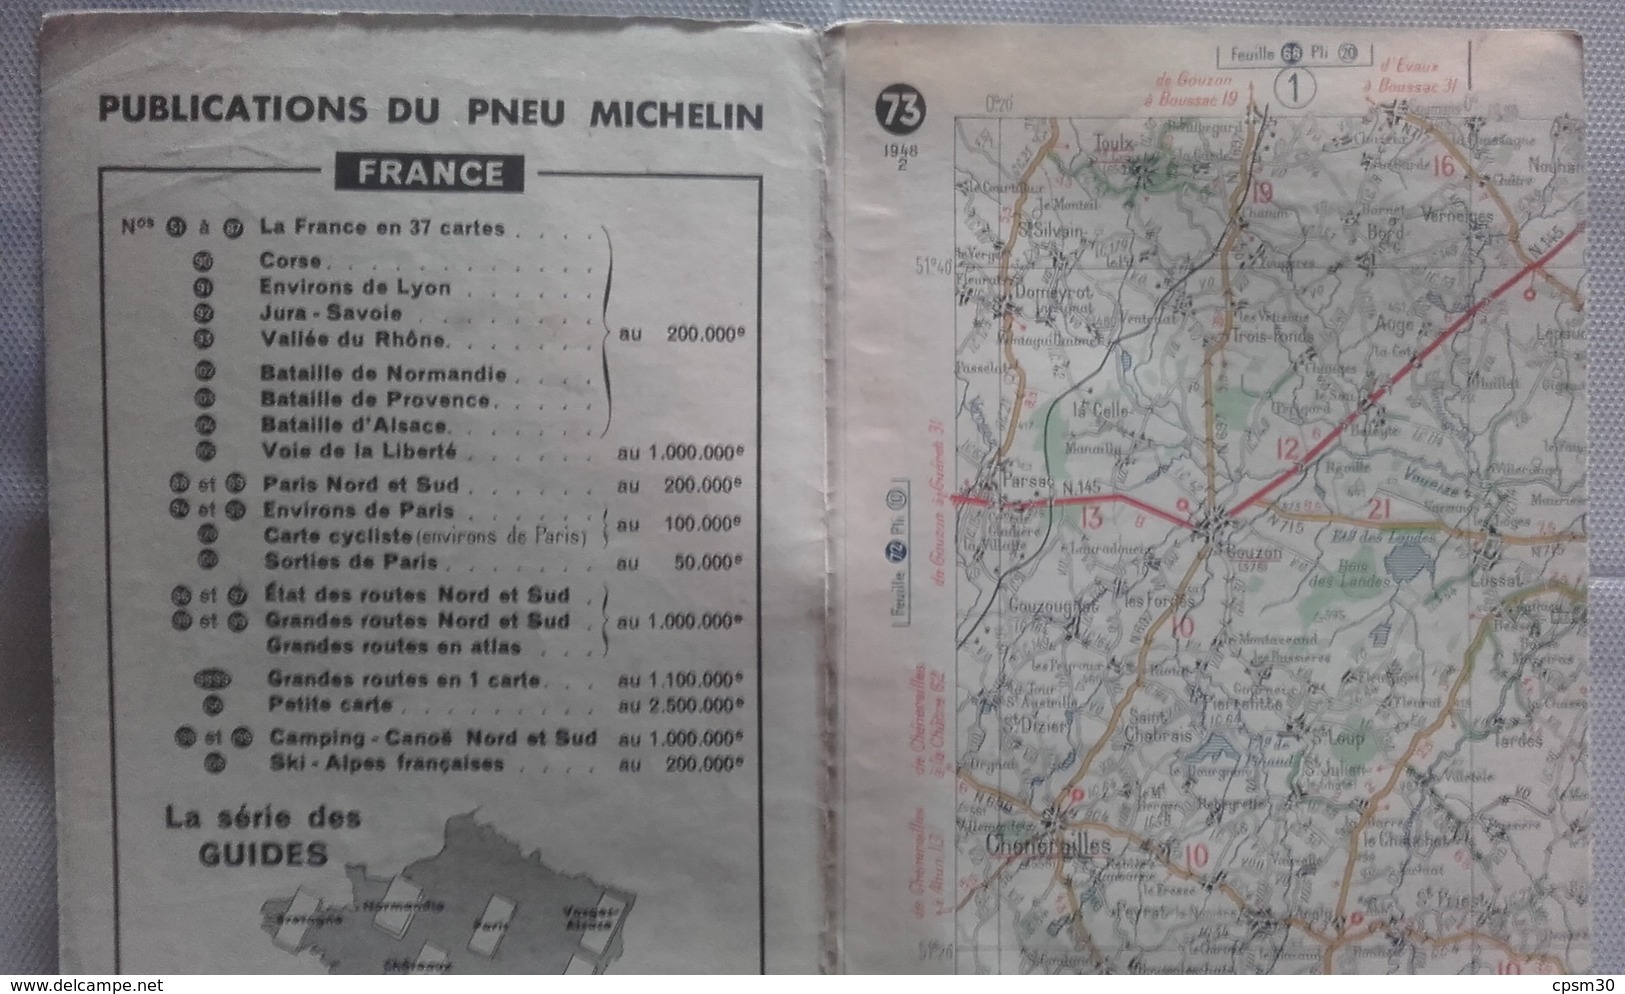 Carte Géographique MICHELIN - N° 073 CLERMONT Fd-LYON - 1948-2 - Cartes Routières